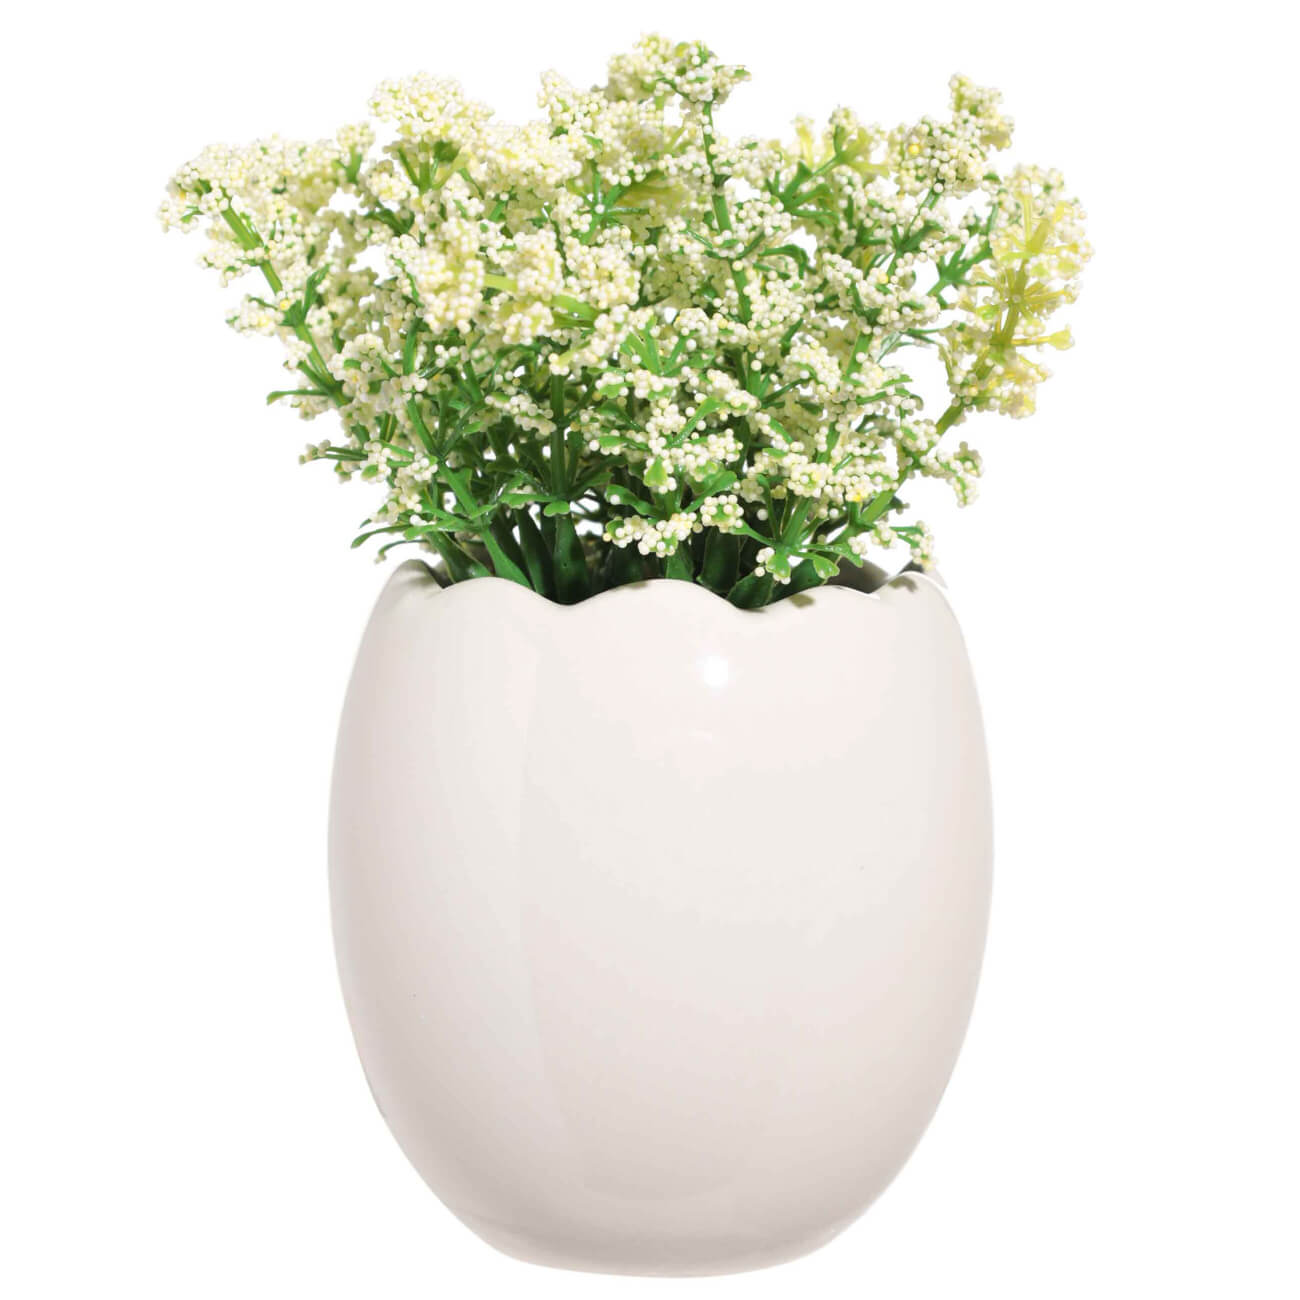 Растение искусственное, 22 см, в горшке, керамика/пенопласт, Белые цветы, Pot garden растение искусственное 22 см в горшке керамика пенопласт белые цветы pot garden